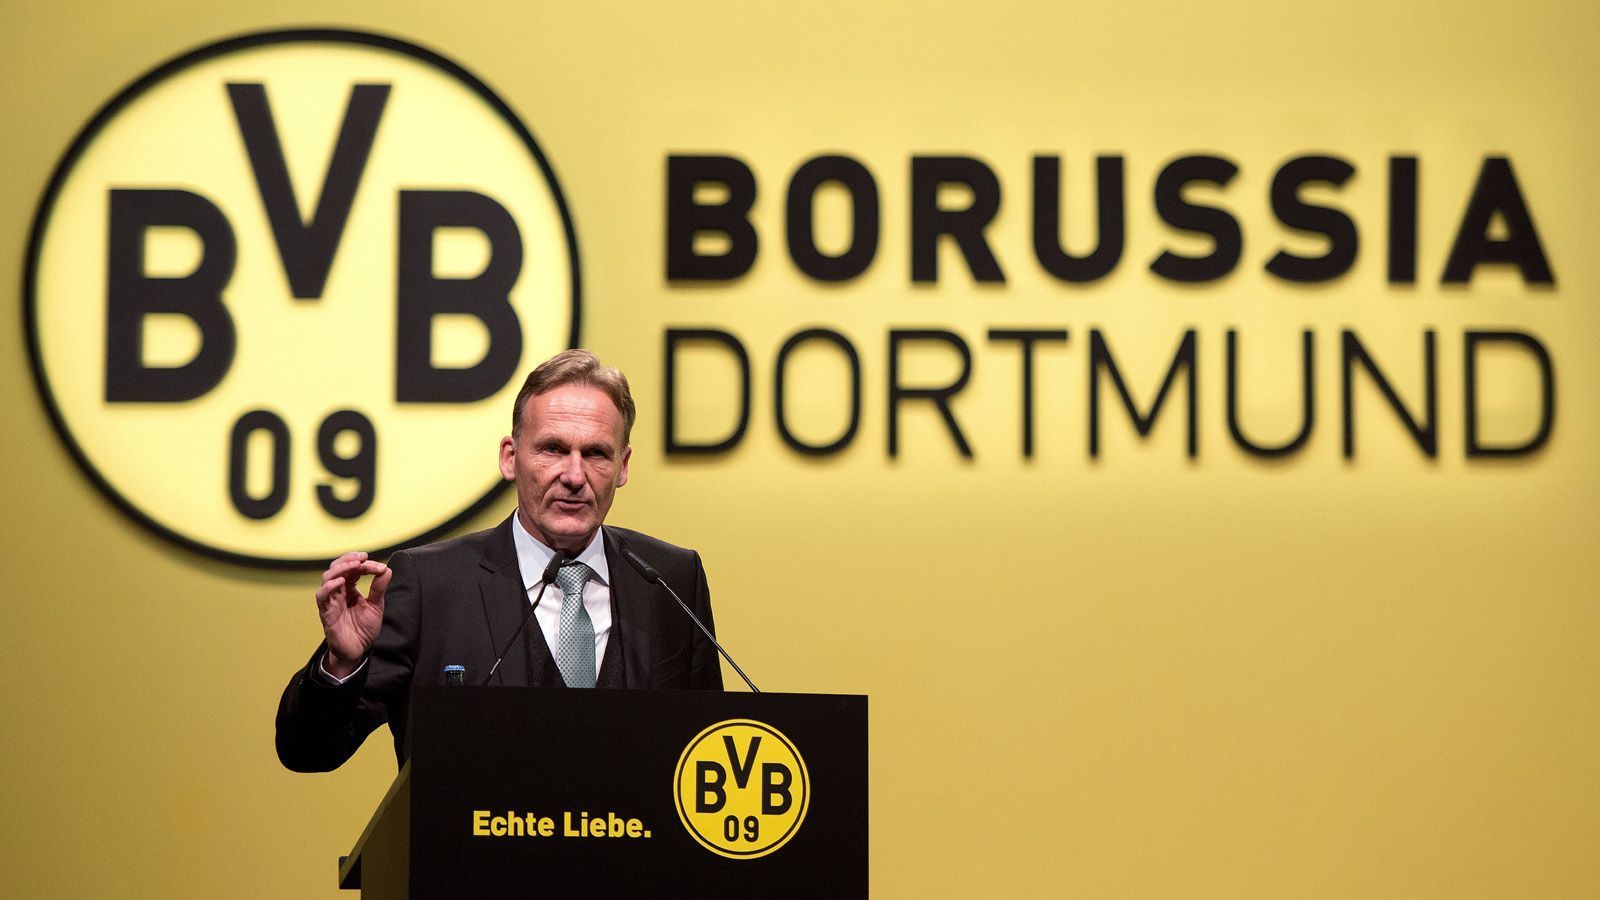 
                <strong>Borussia Dortmund</strong><br>
                Die Dortmunder haben ihre Profi-Abteilung sowie zweite Mannschaft und die A-Jugend ausgegliedert (Borussia Dortmund GmbH & Co. KGaA). Zudem ist der BVB an der Börse gelistet. 59,93 % der Aktien befinden sich im Streubesitz. Evonik Industries besitzt mit 14,87 % den größten alleinigen Anteil.Kommanditaktionäre:59,93 % Streubesitz14,78 % Evonik Industries9,33 % Bernd Geske5,53 % Borussia Dortmund e. V.5,43 % Signal Iduna5,00 % Puma
              